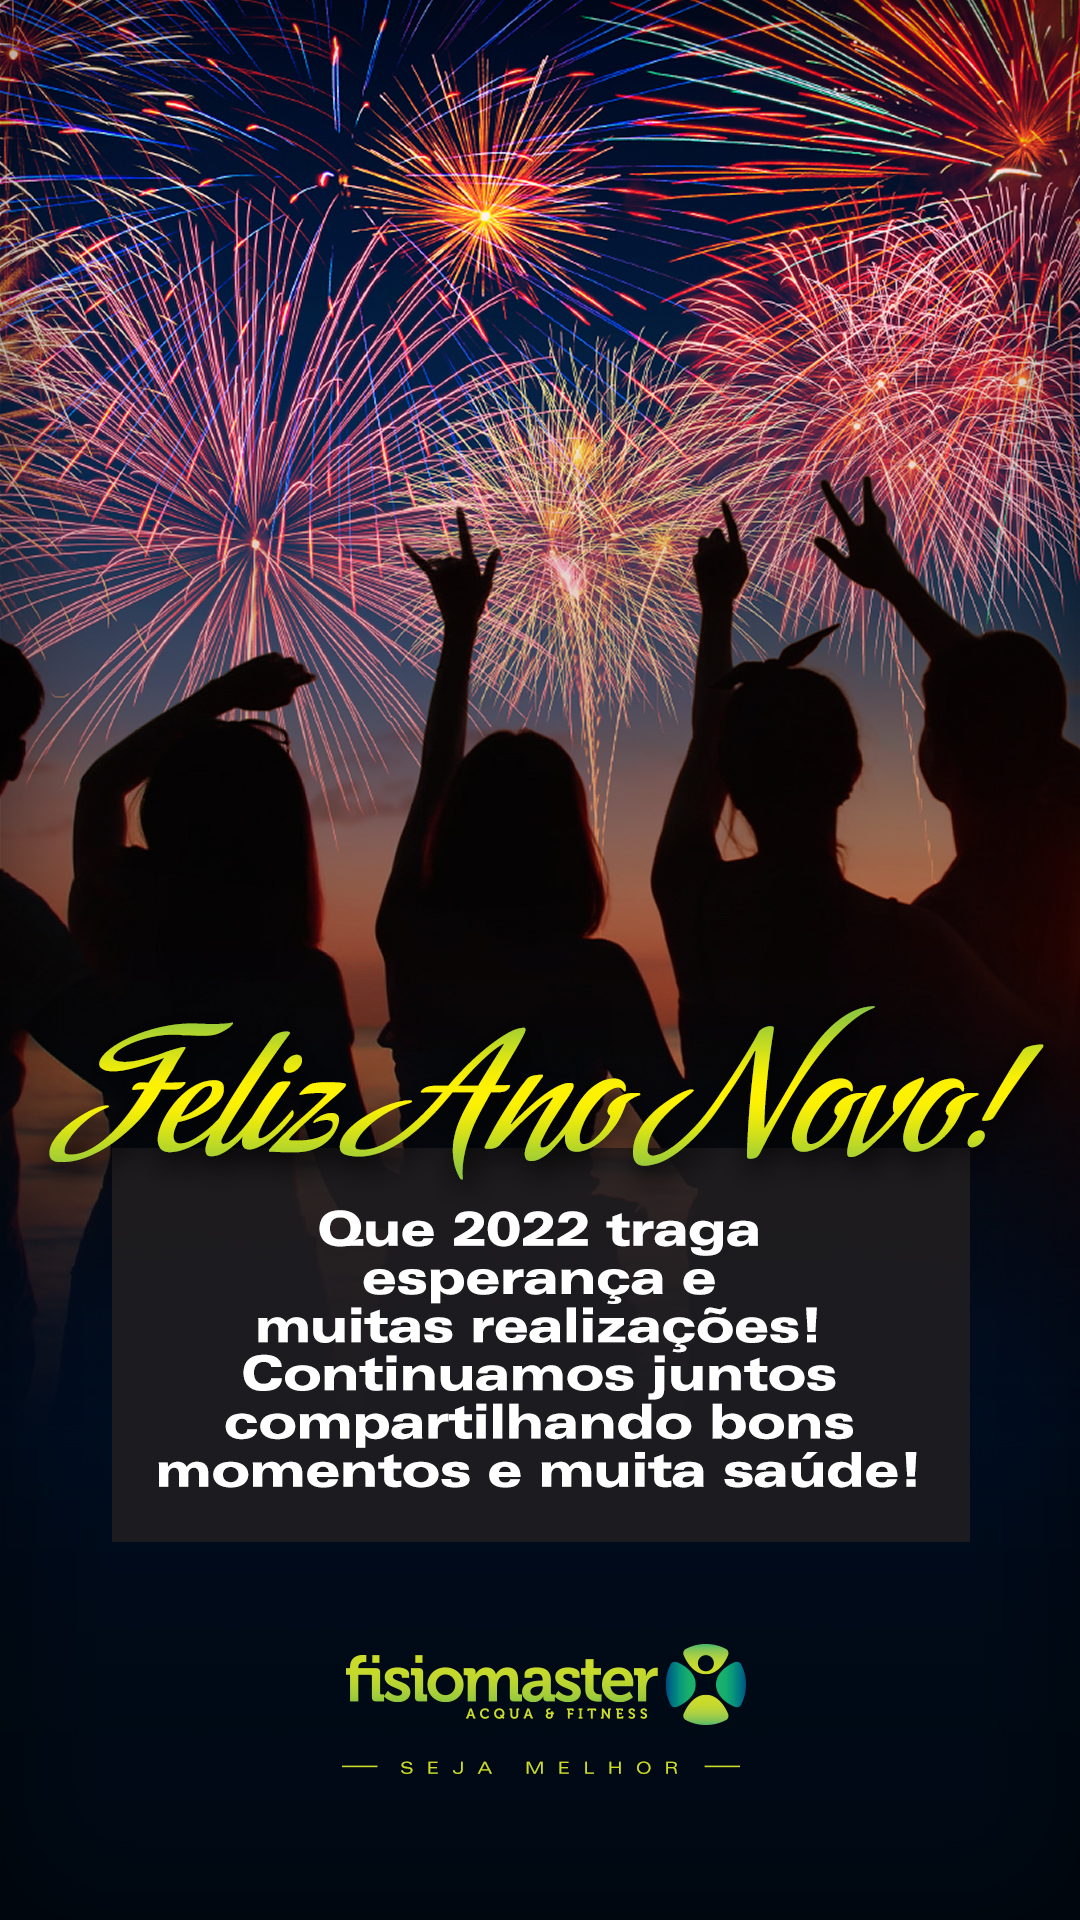 Que 2022 traga muitas realizações e esperança para você! Continuamos juntos compartilhando momentos e muita saúde! Feliz Ano Novo!